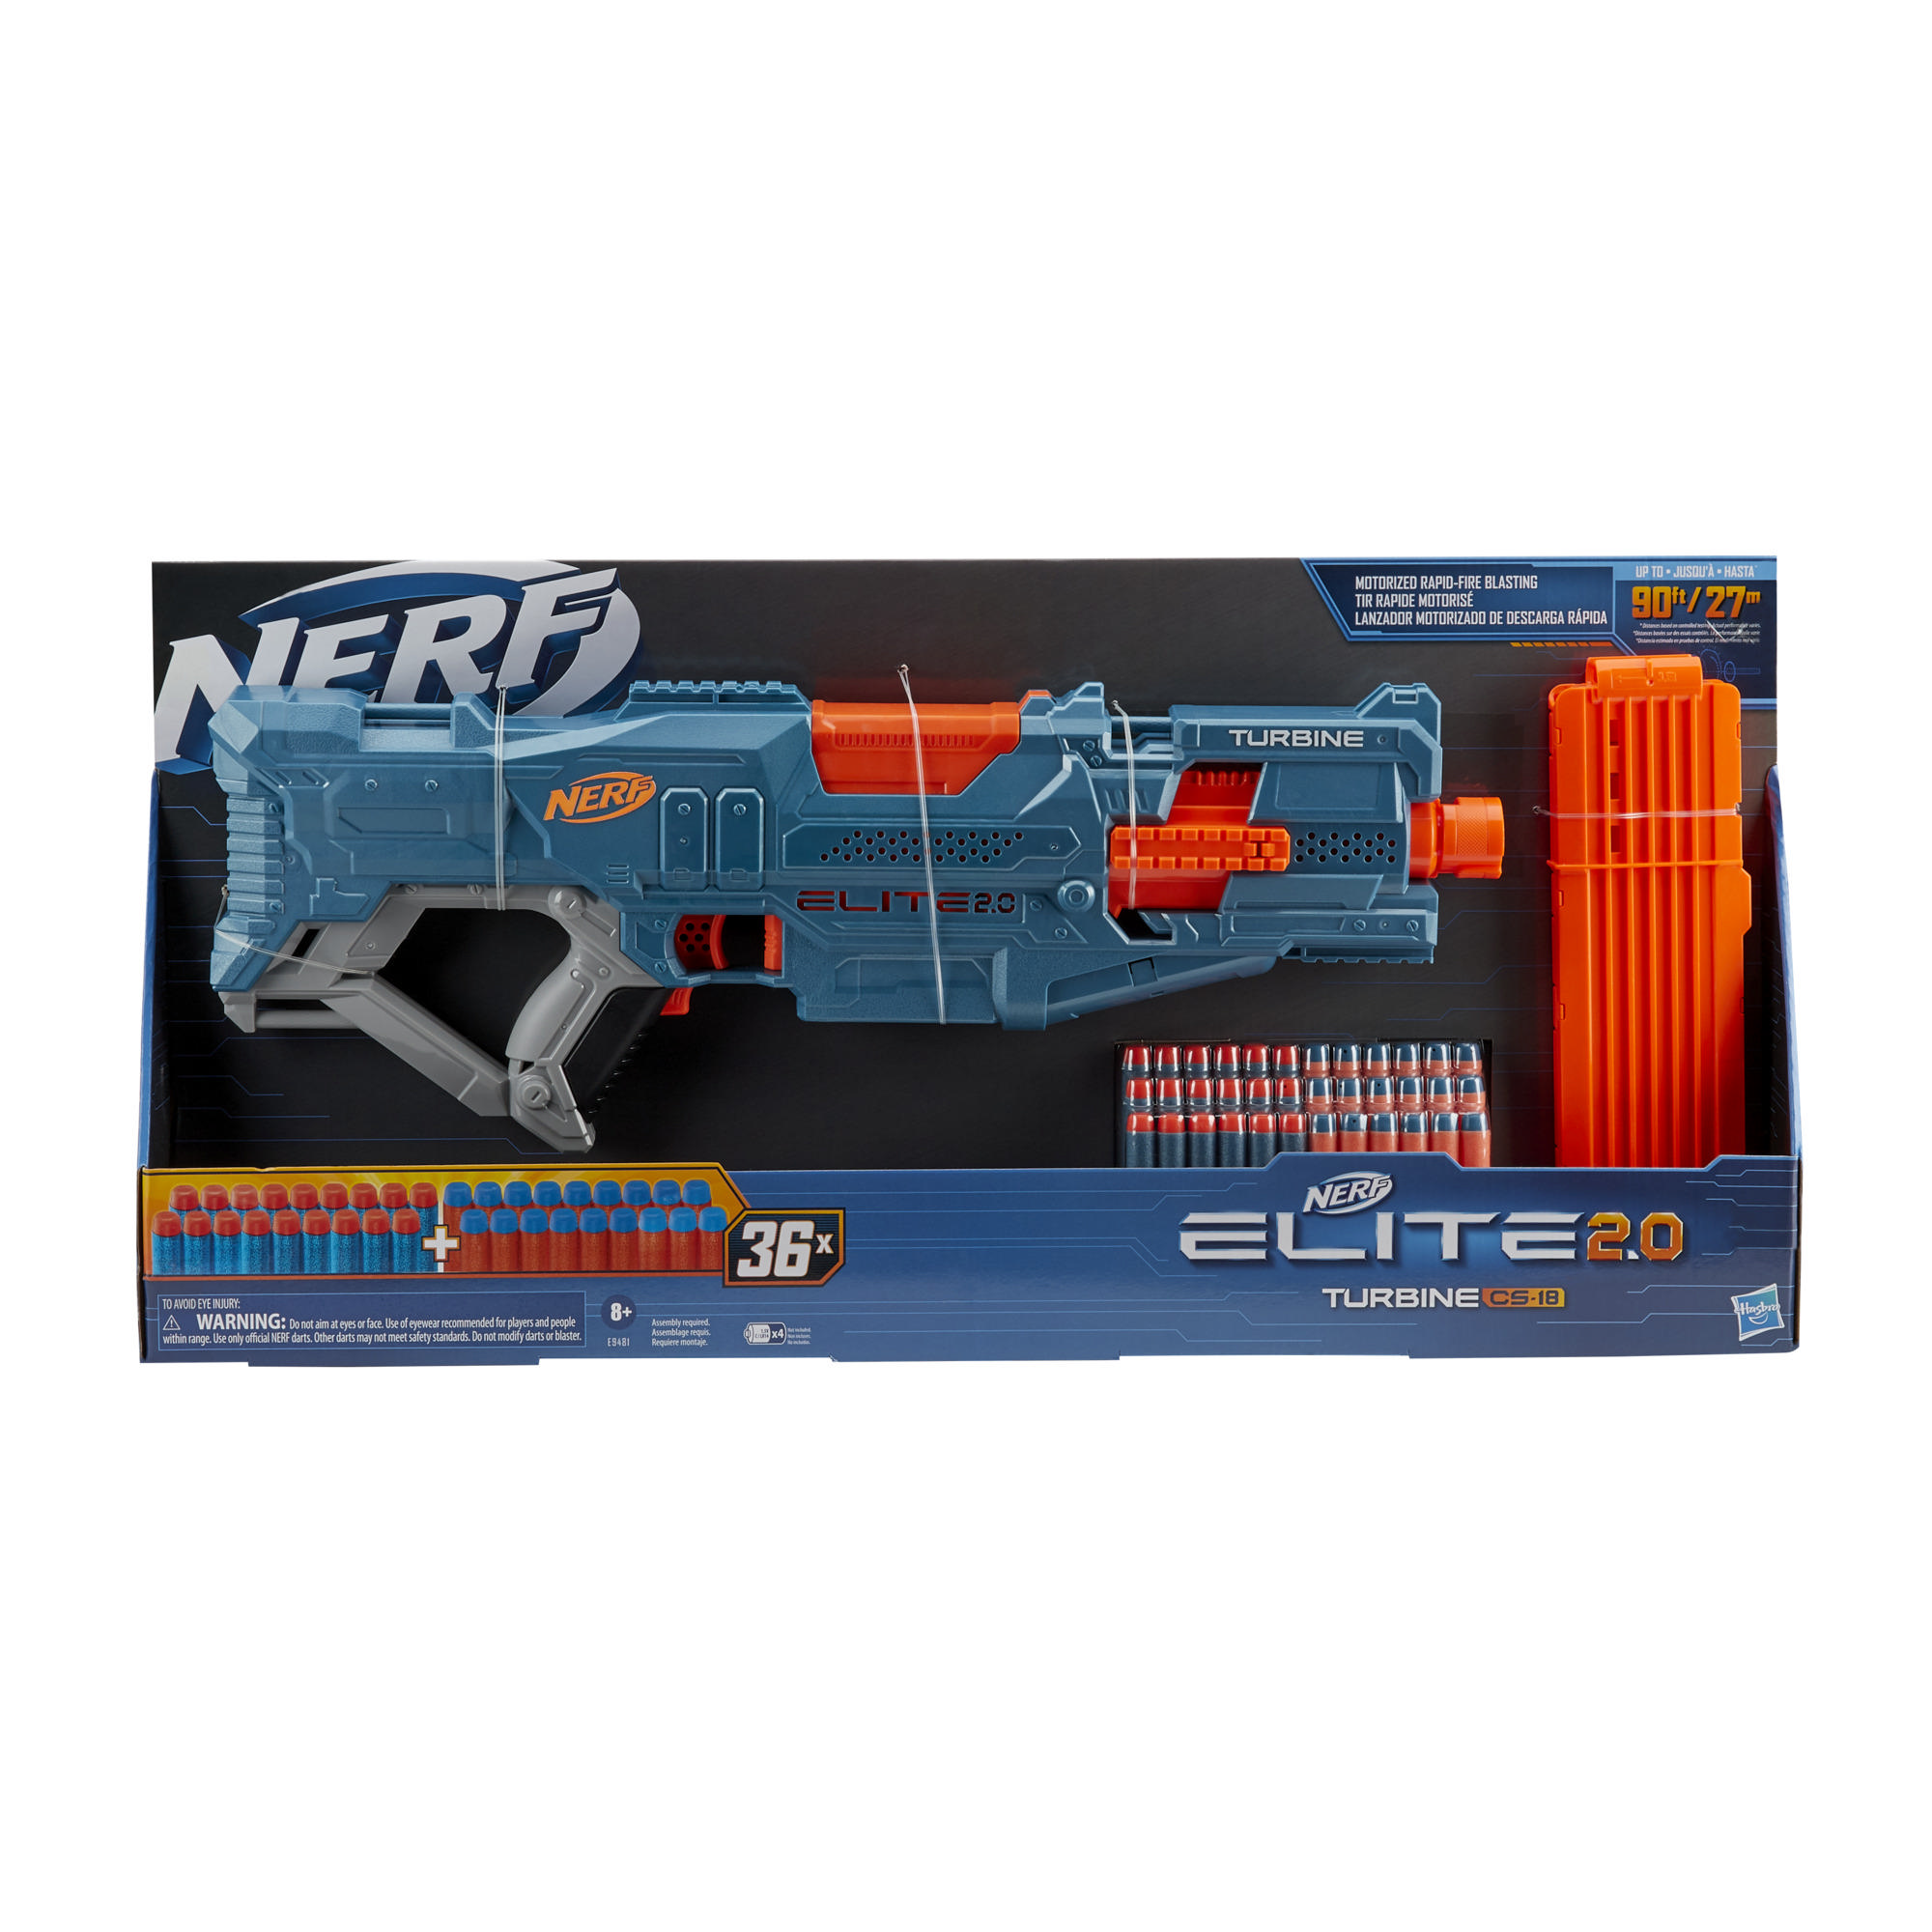 kam uitlijning Aanpassing Nerf Elite 2.0 Turbine CS-18 gemotoriseerde blaster, 36 Nerf-darts, magazijn  voor 18 darts, ingebouwde aanpassingsmogelijkheden - Nerf